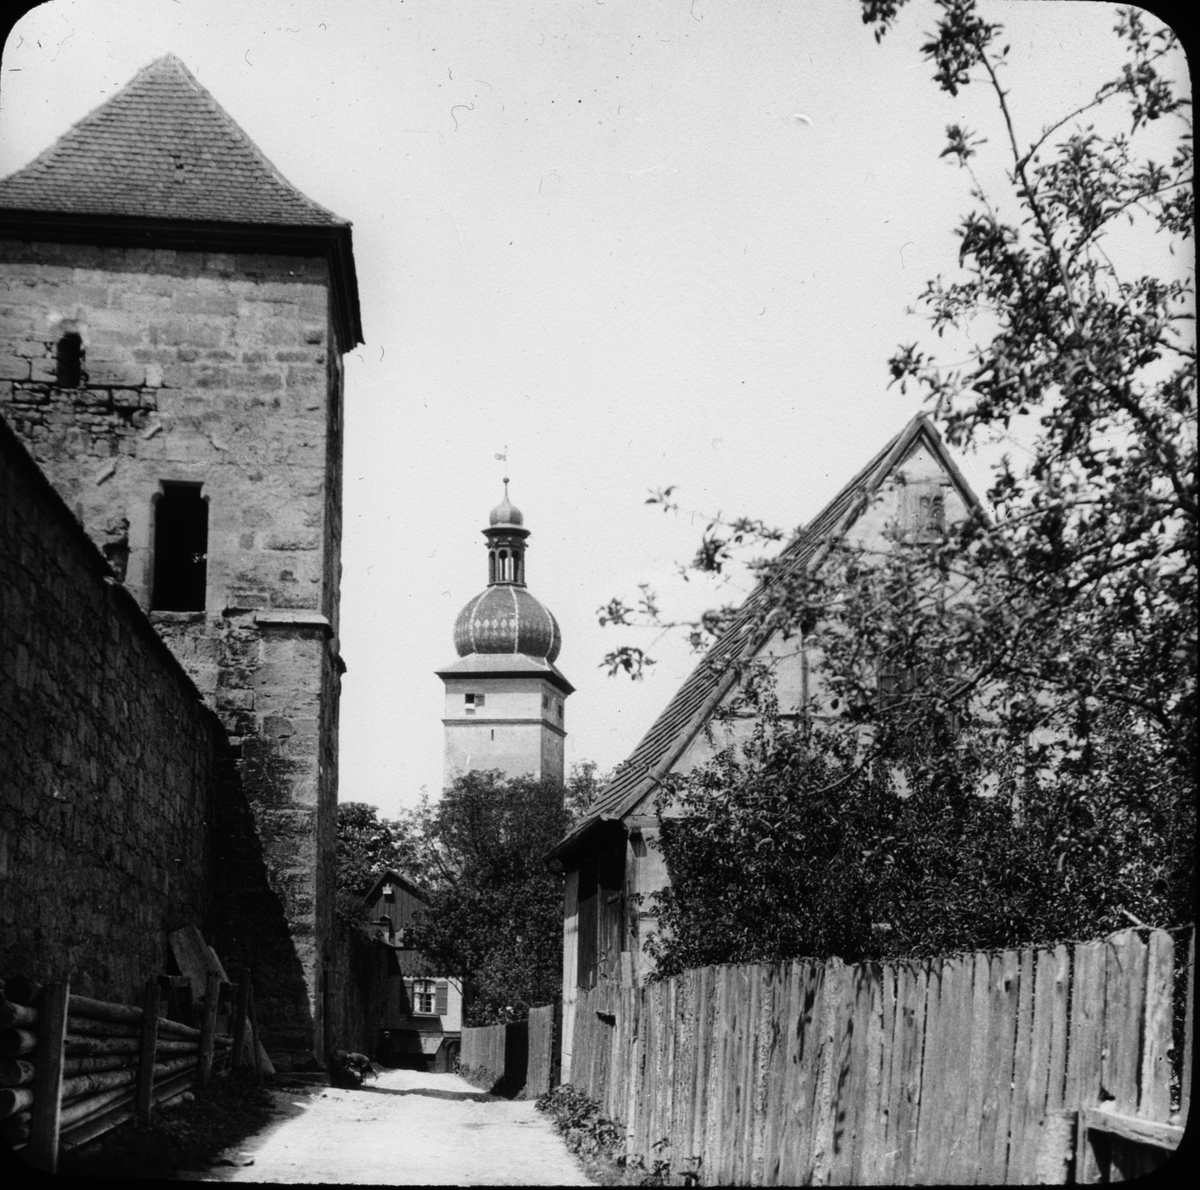 Skioptikonbild med motiv från Dinkelsbühl med stadsporten Segringer Tor i bakgrunden.
Bilden har förvarats i kartong märkt: Resan 1911. Dinkelsbühl 10.V.